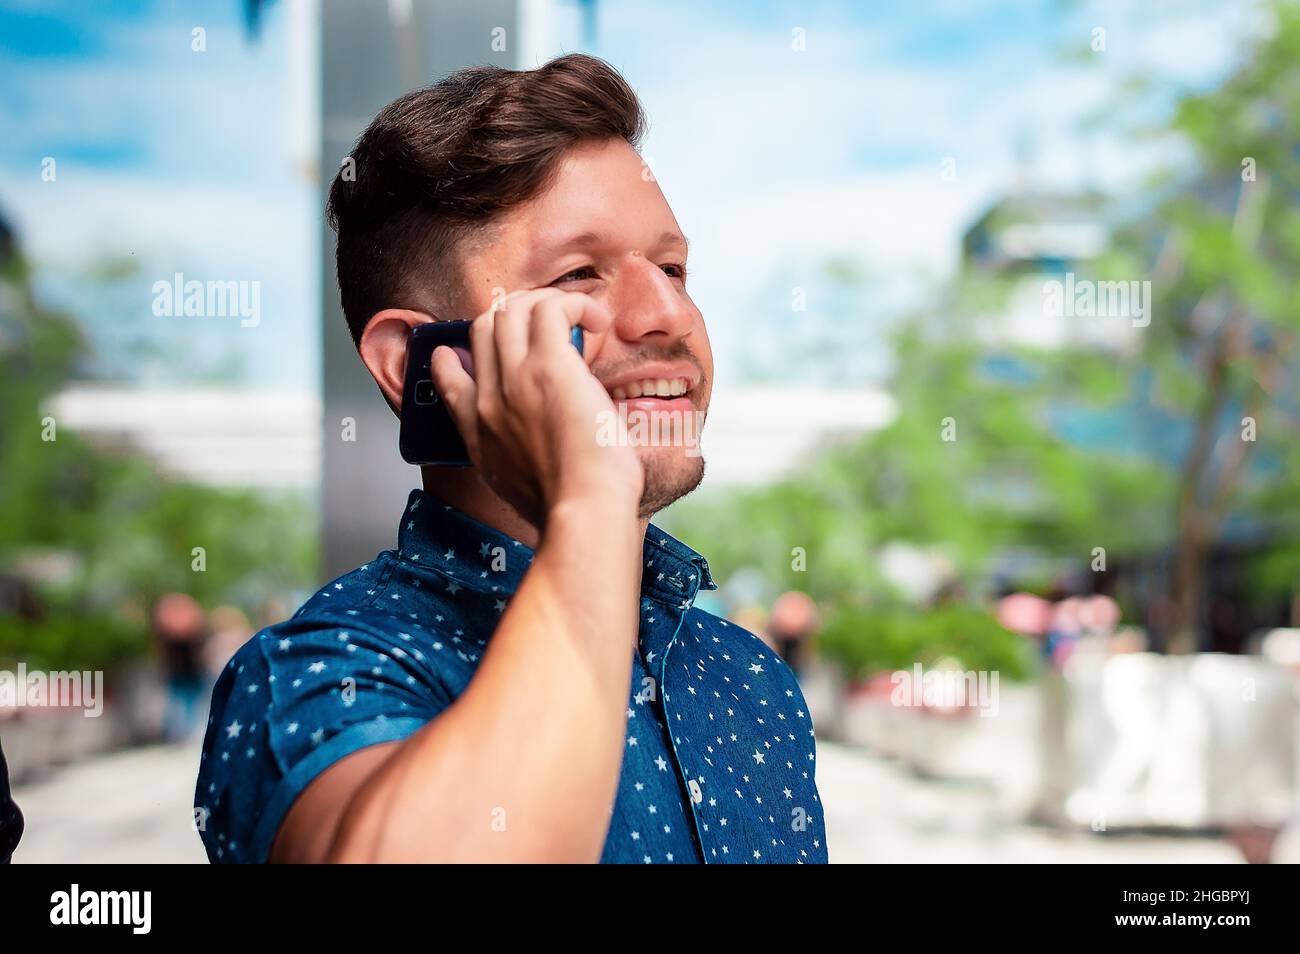 Der junge Mann, hispanic Latino, mit Bart und kurzen Haaren, gekleidet in ein blaues Kurzarmhemd, lächelt und redet am Telefon, mit dem Himmel und sma Stockfoto